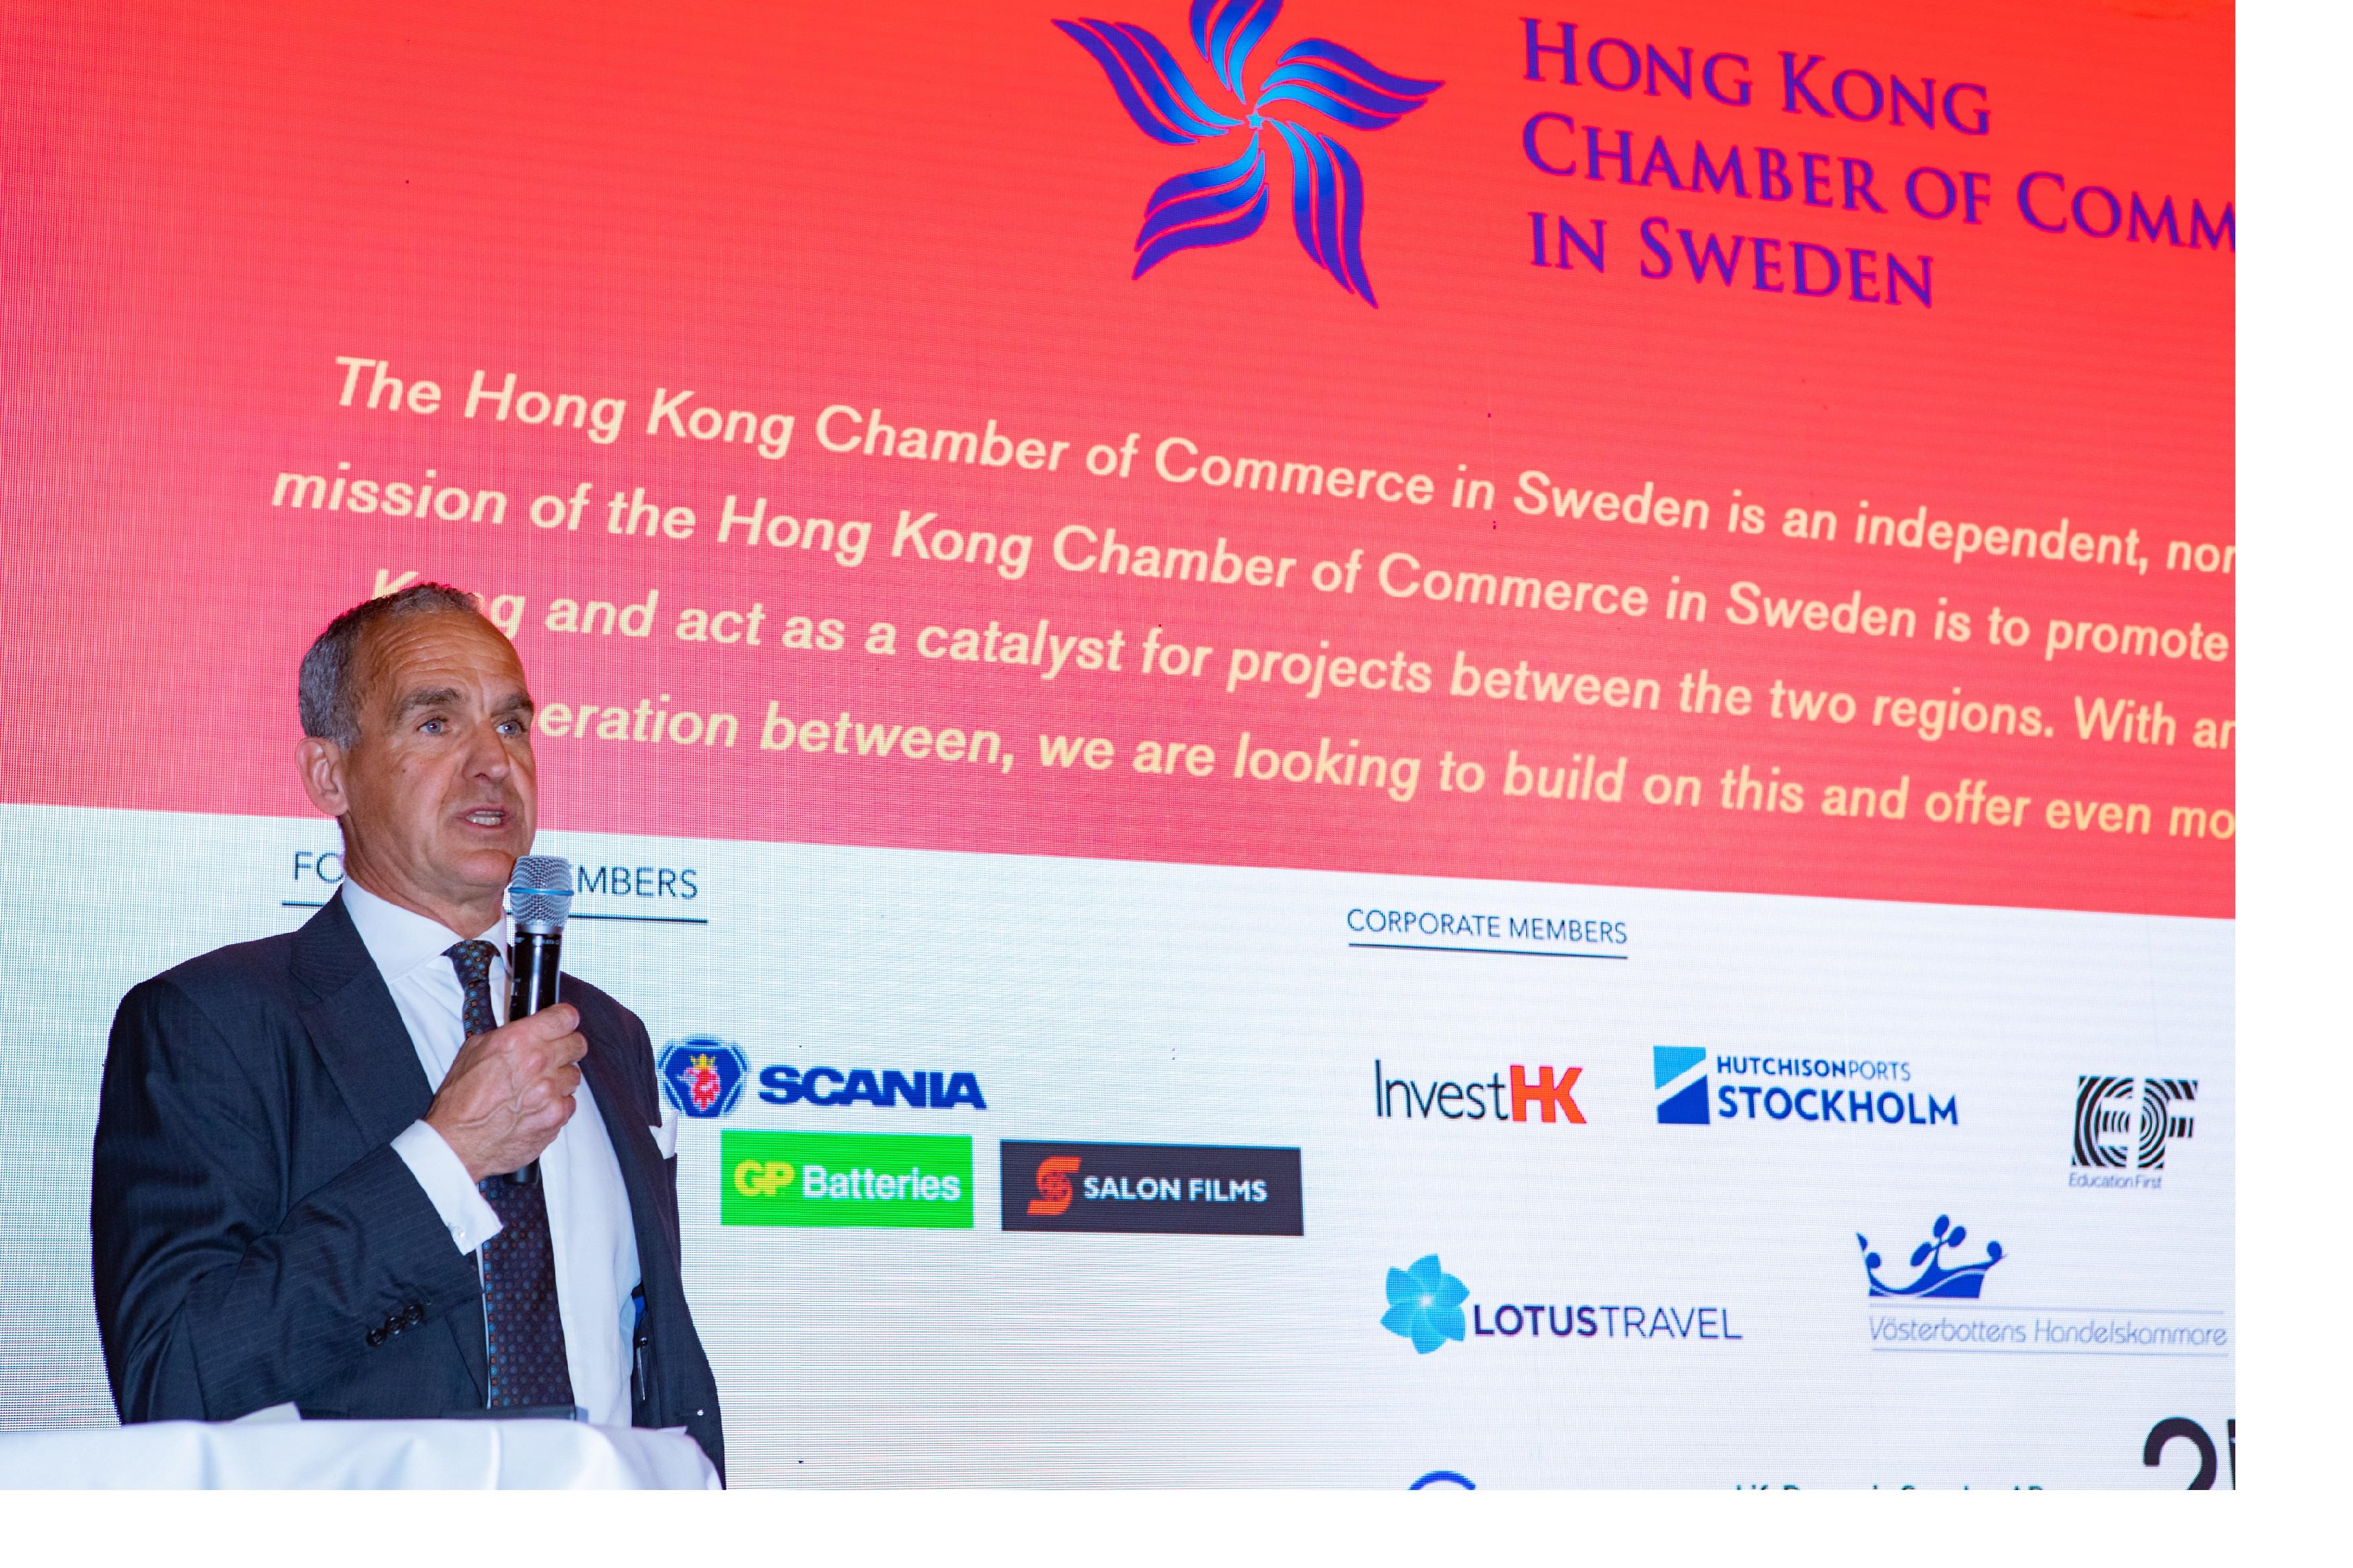 香港驻伦敦经济贸易办事处与瑞典香港商会二月二十一日（斯德哥尔摩时间）在斯德哥尔摩合办龙年新春酒会。图示瑞典香港商会主席Mats Gerlam在酒会致辞。
